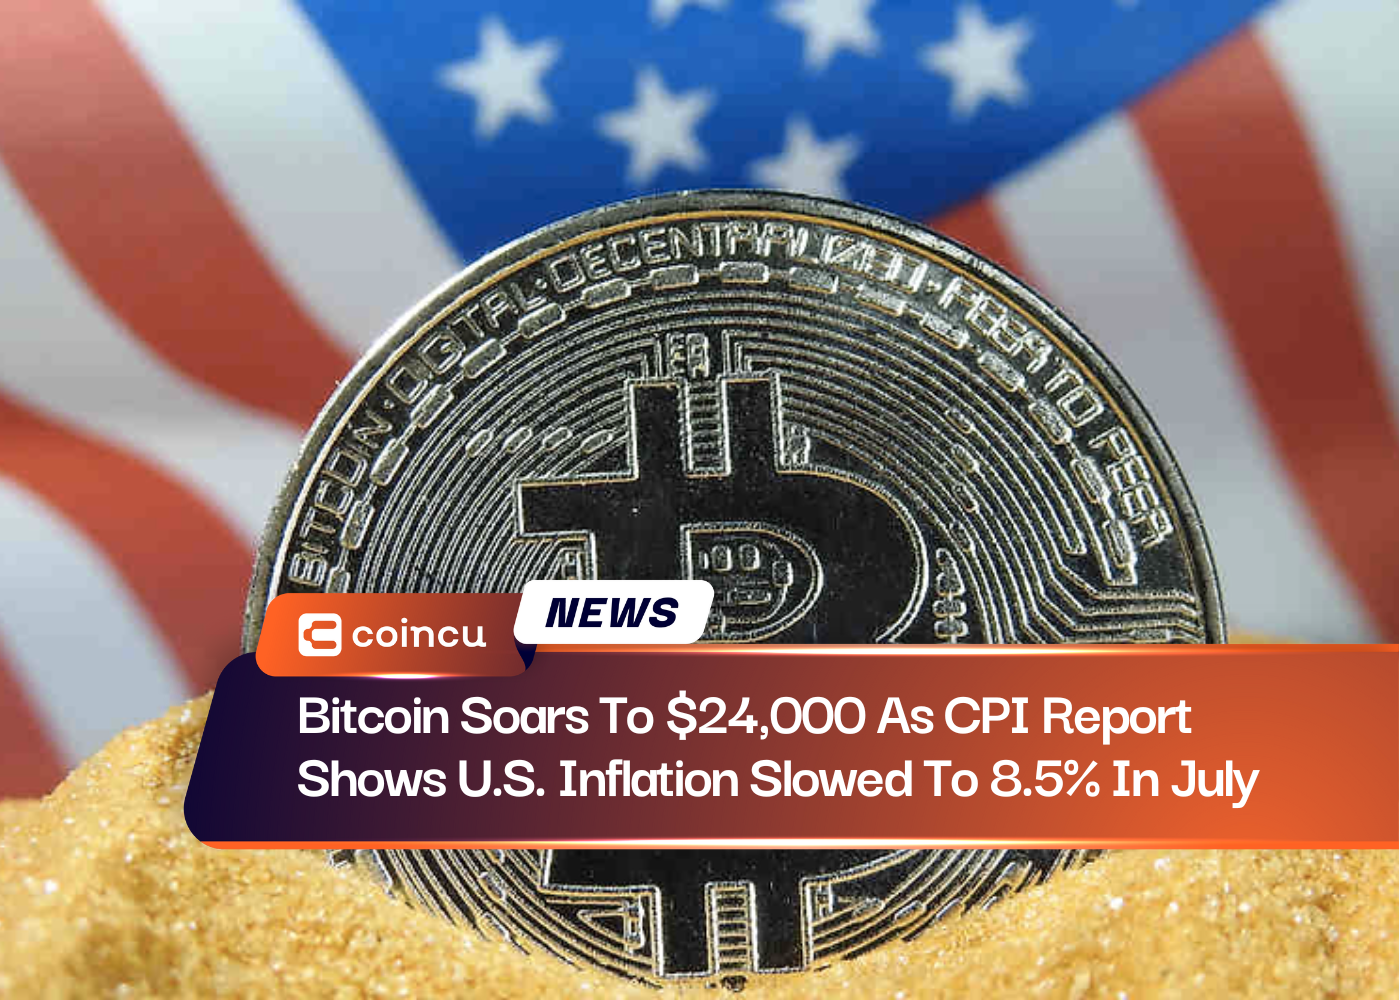 Bitcoin tăng vọt lên 24,000 USD khi báo cáo CPI cho thấy lạm phát của Mỹ giảm xuống 8.5% trong tháng XNUMX